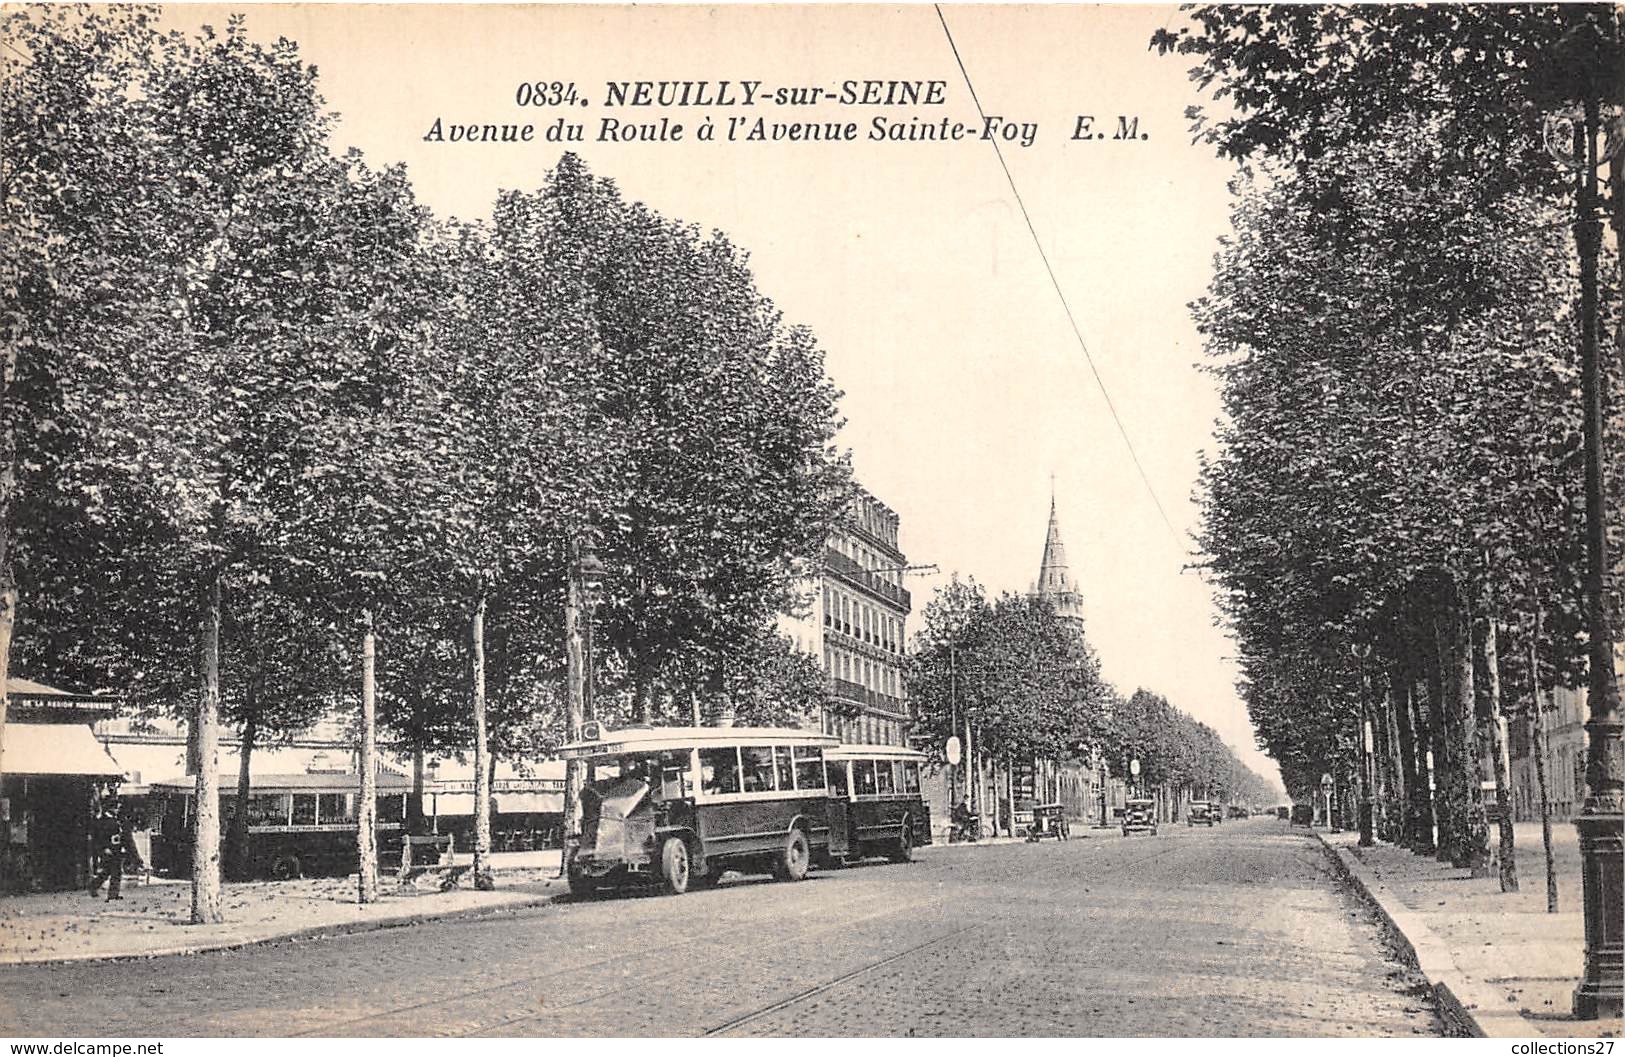 92-NEUILLY-SUR-SEINE- AVENUE DU ROULE A L'AVENUE SAINTE-FOY - Neuilly Sur Seine